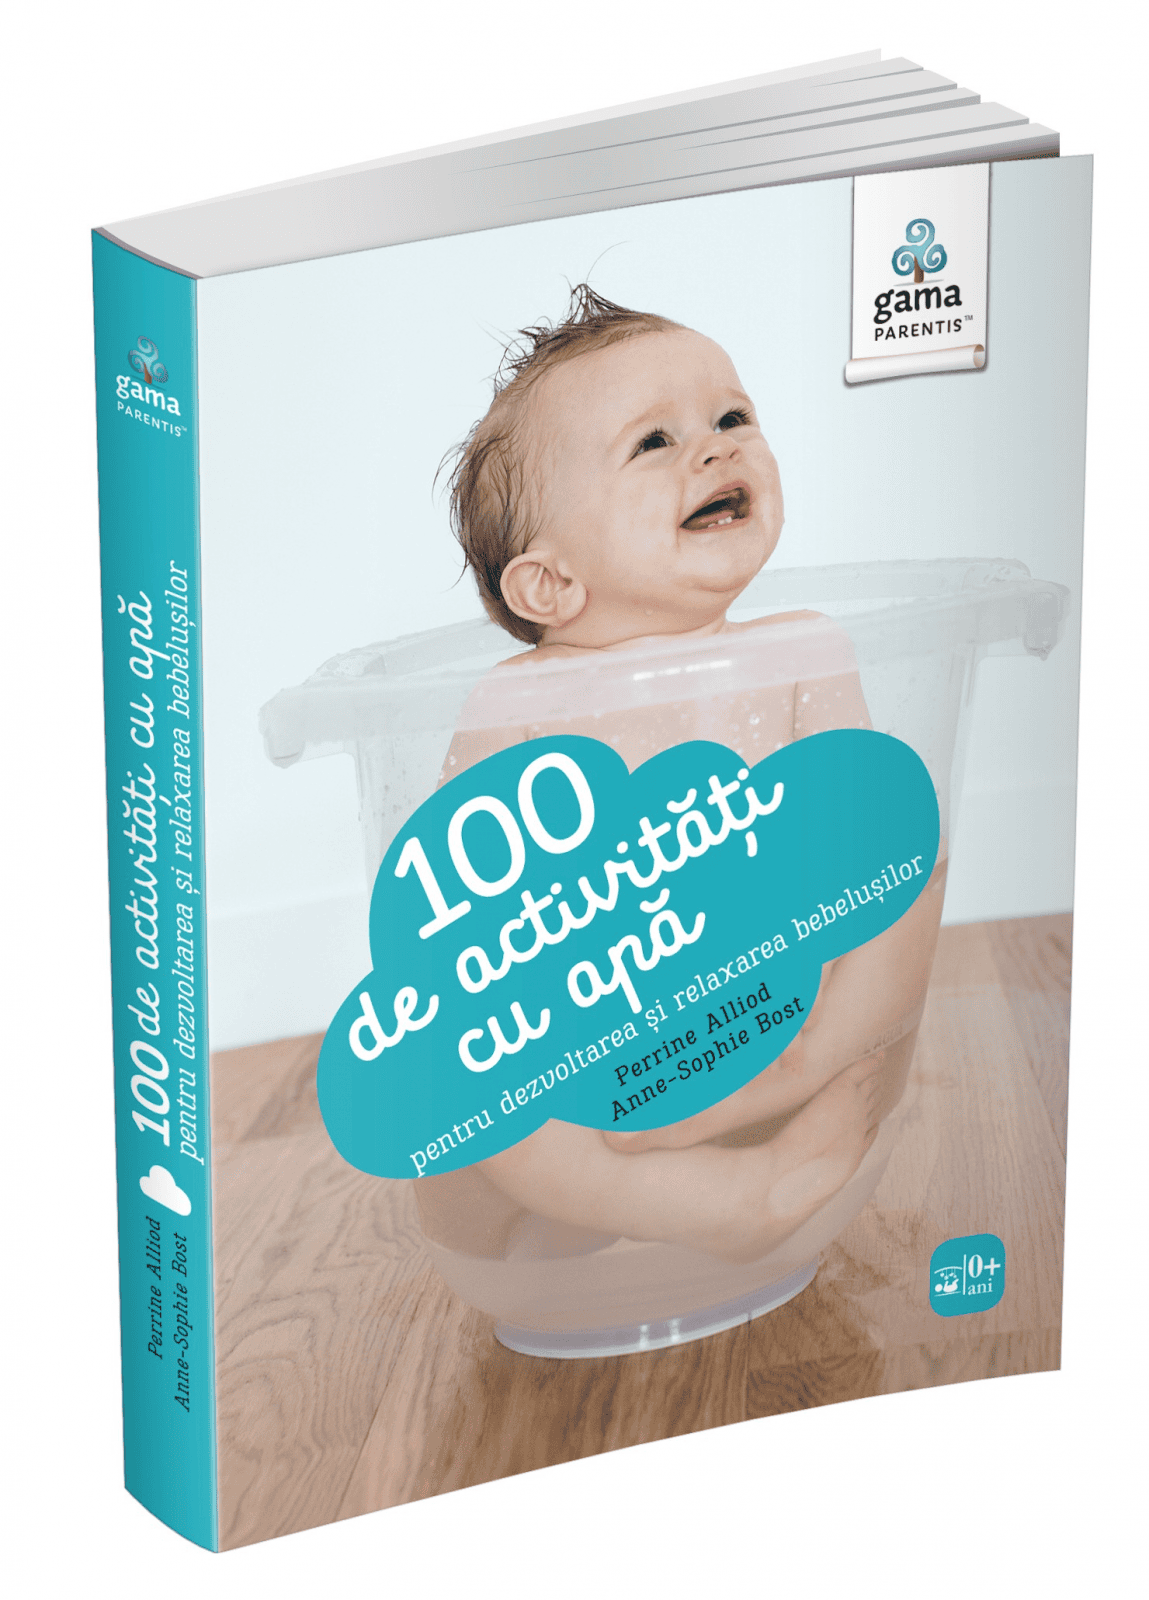 100 de activitati cu apa pentru dezvoltarea si relaxarea bebelusului, Editura Gama, 2-3 ani +